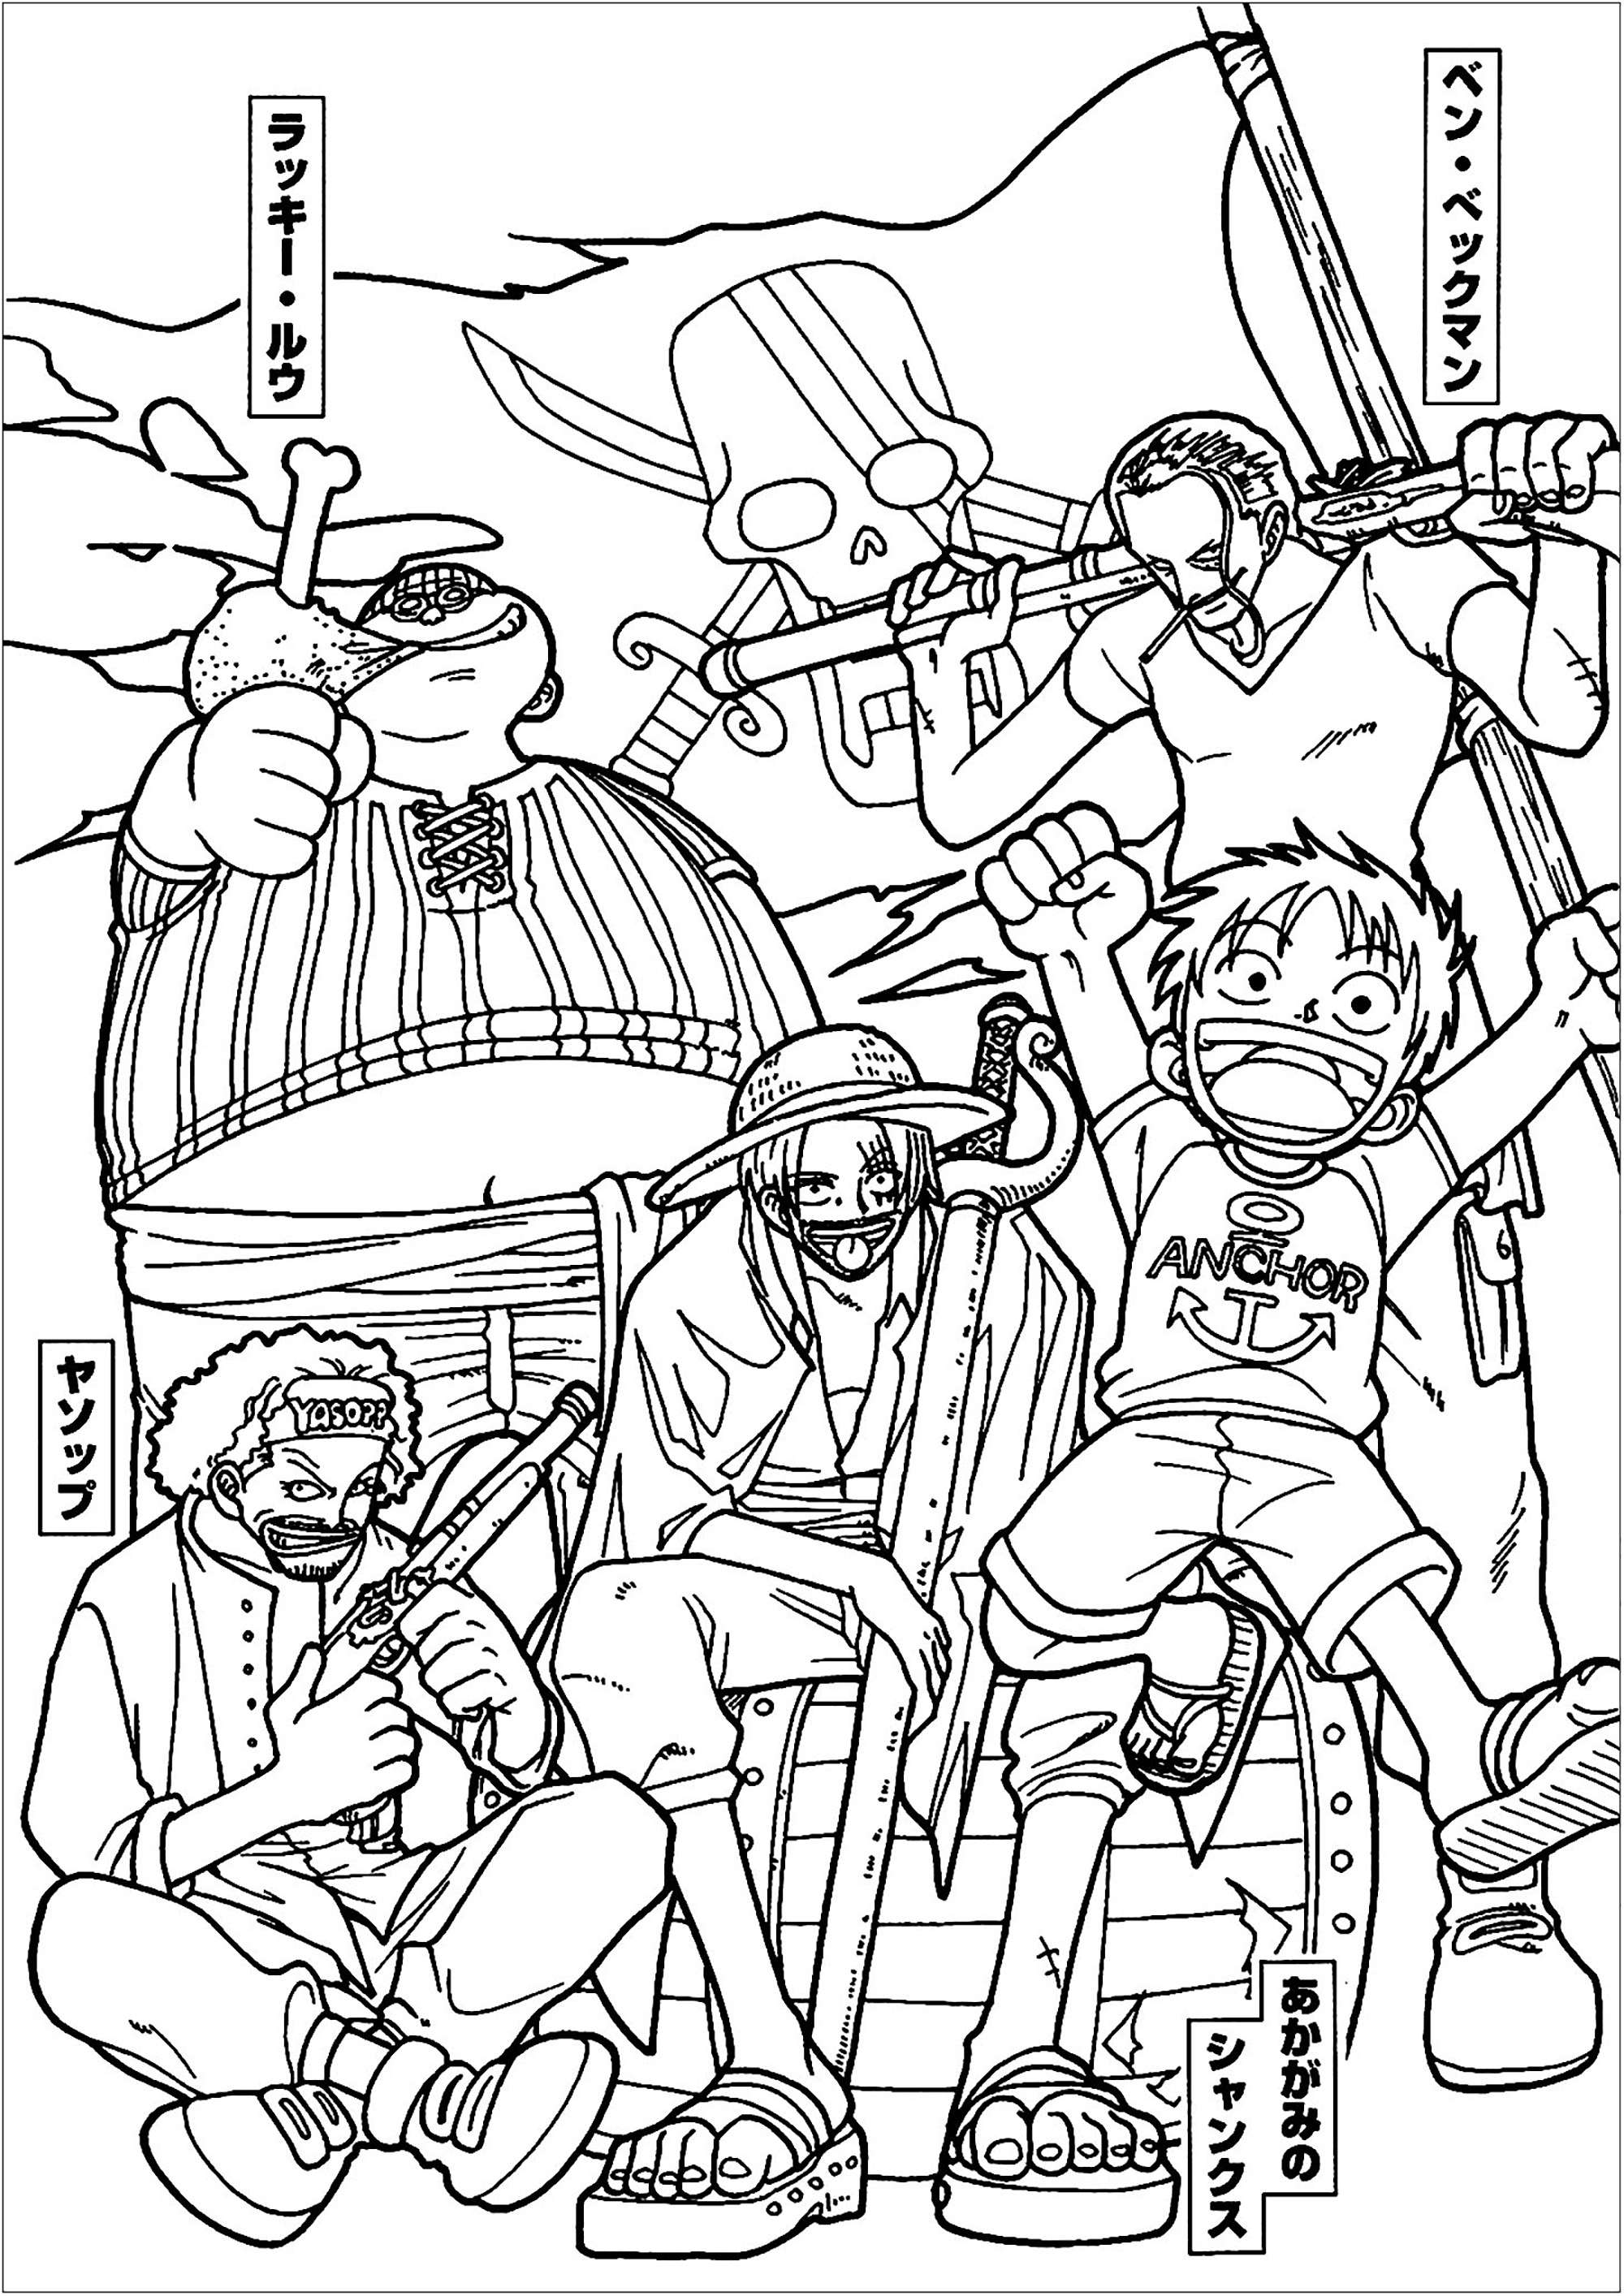 Colorare con i personaggi di One piece. 'One Piece' è un manga e un anime creato da Eiichiro Oda nel 1997. È stato adattato in una serie live-action da Netflix nel 2023.